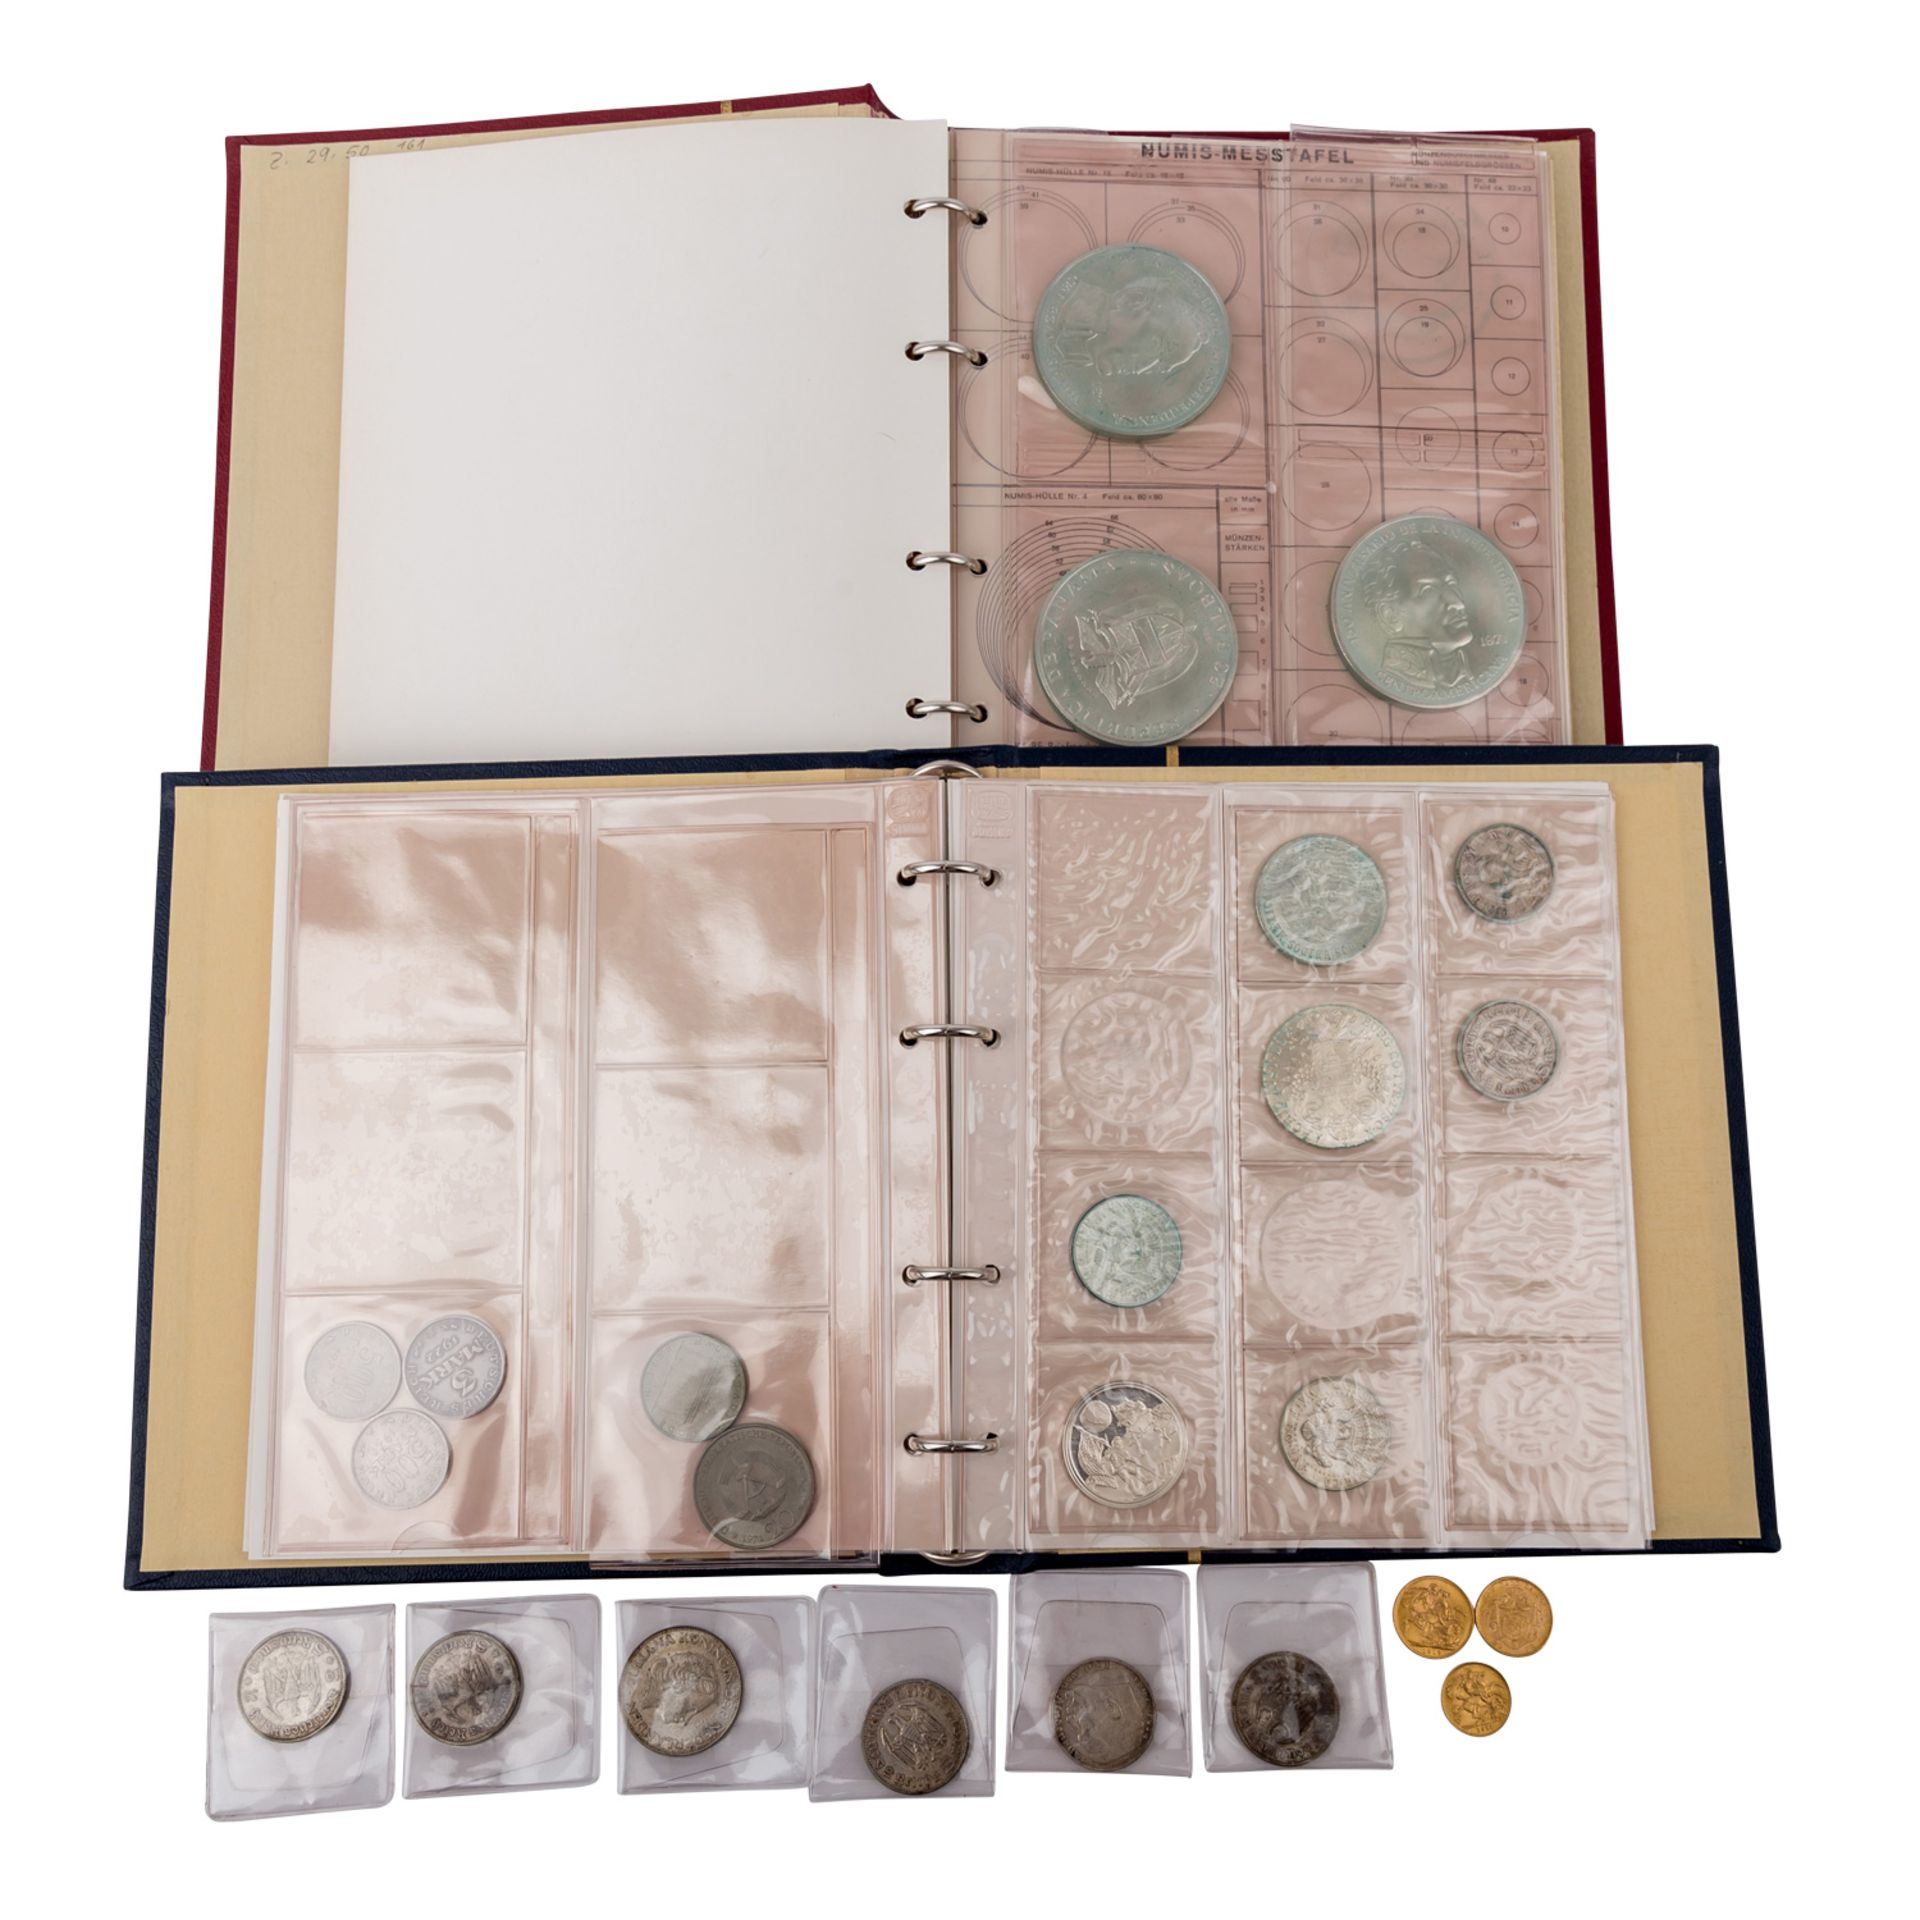 2 Münzalben mit GOLD und SILBER -dabei u.a. 1 x GB - 1 Sovereign 1913, George V., ss., 7,32g GOLD